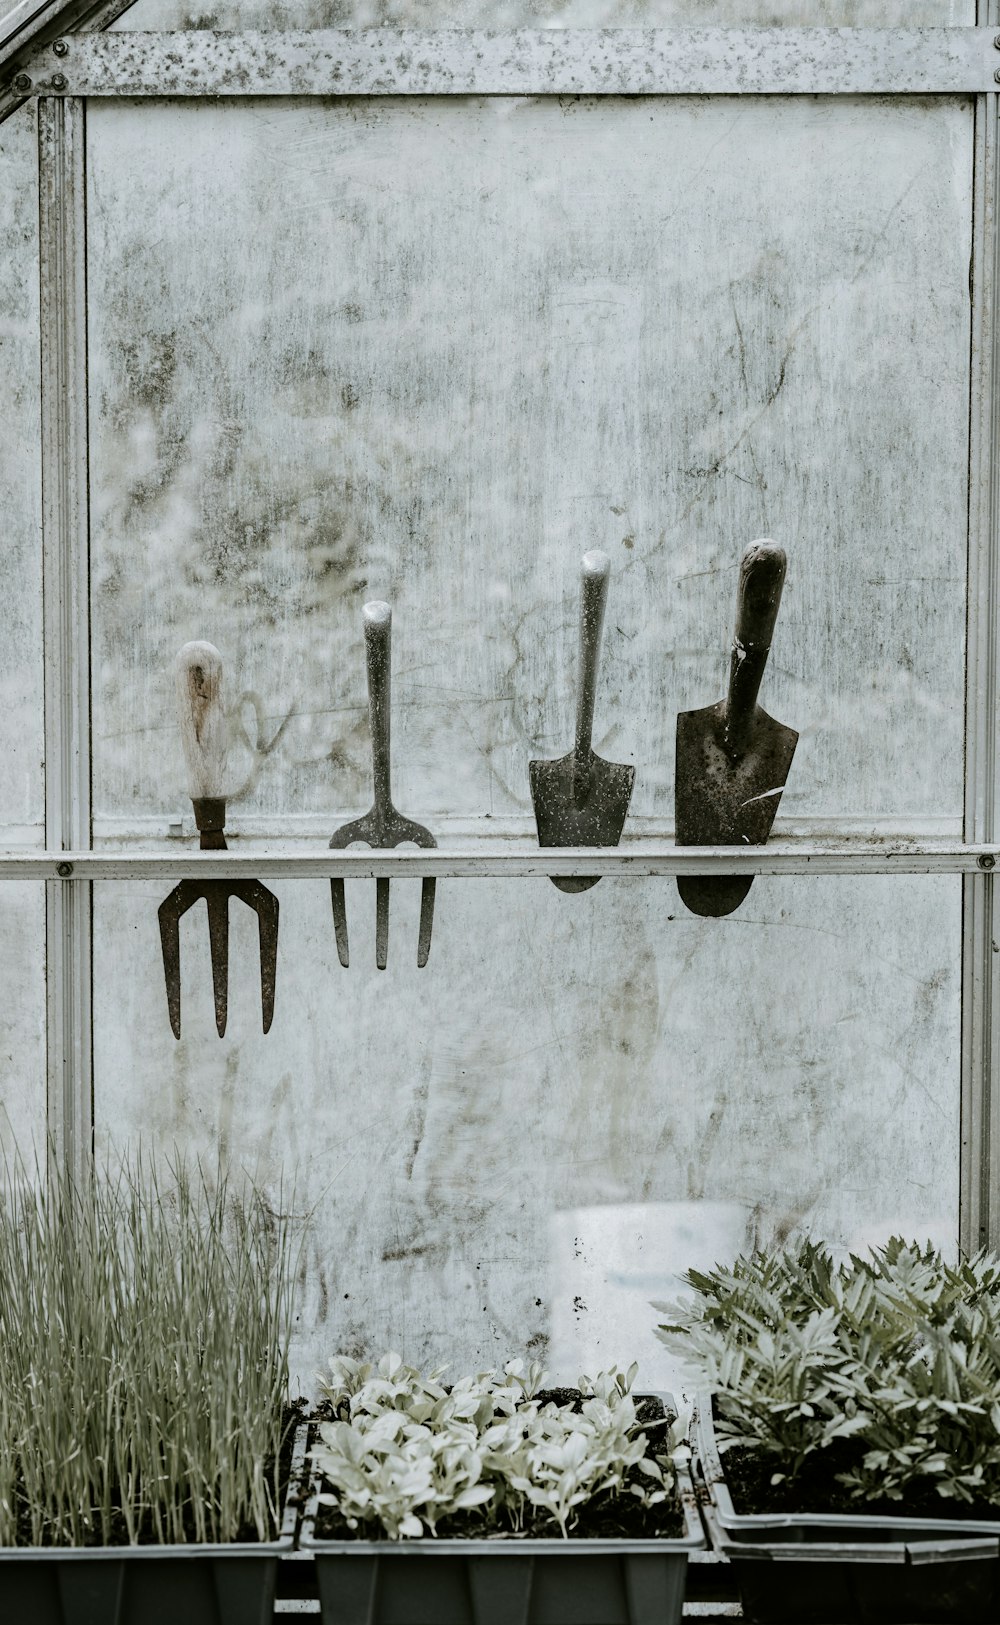 Cuatro herramientas de jardinería de mano en un estante